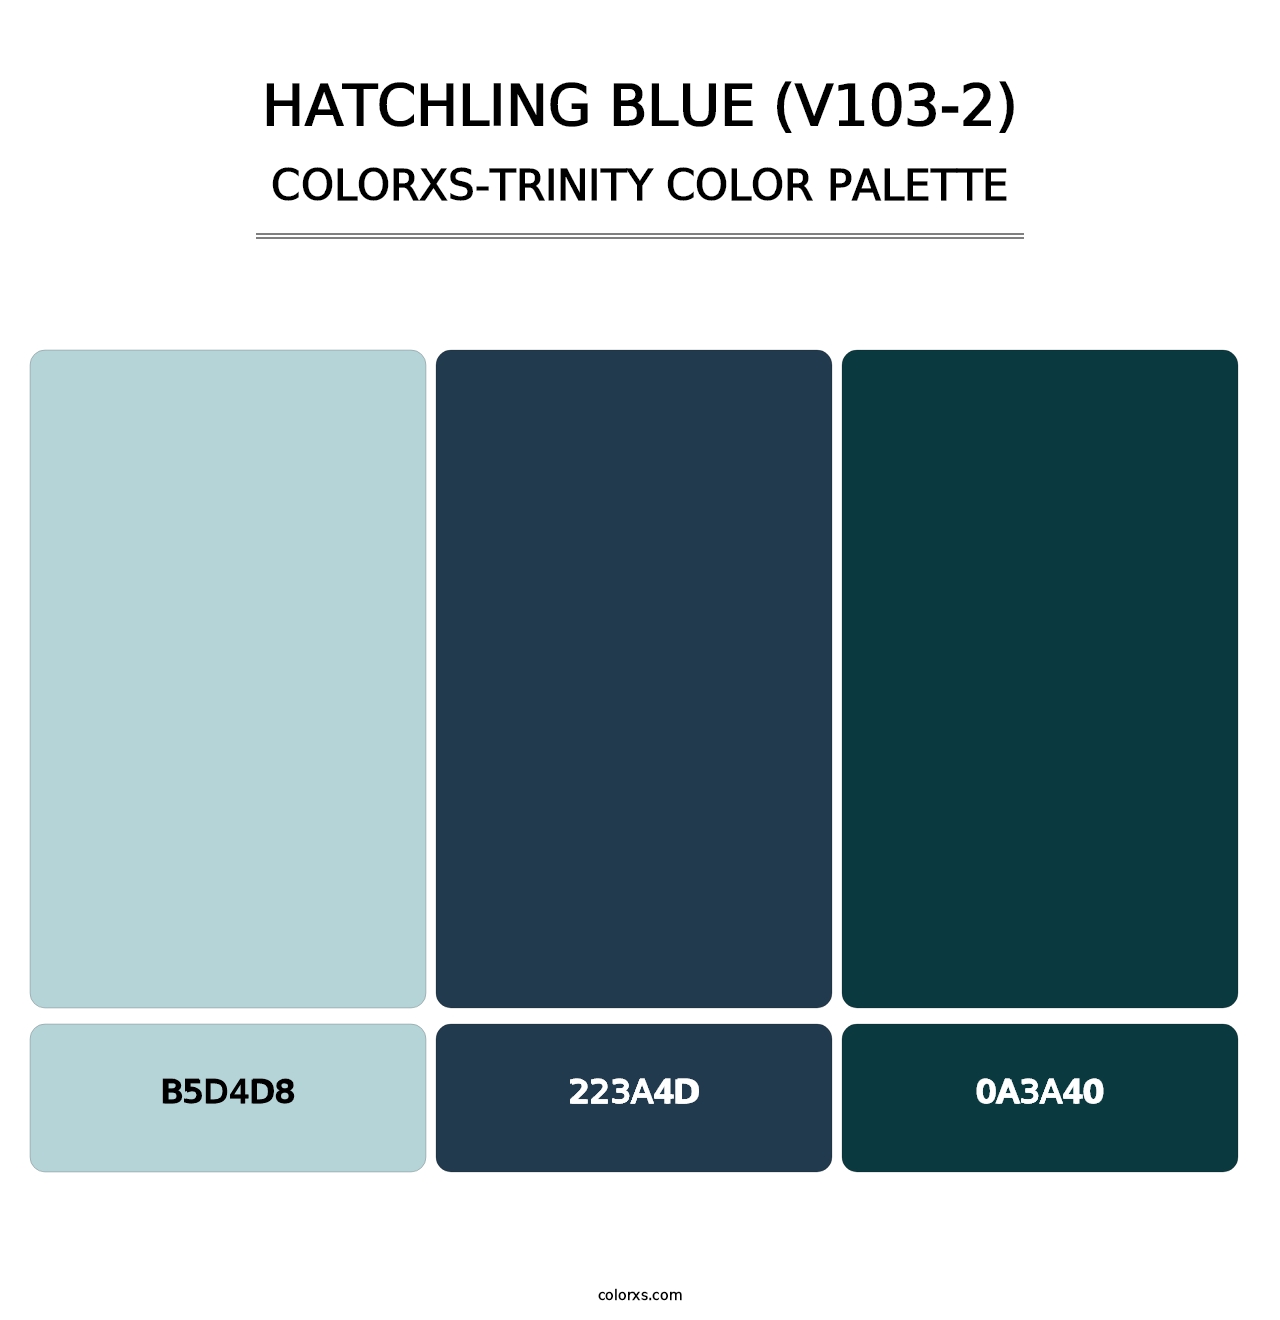 Hatchling Blue (V103-2) - Colorxs Trinity Palette